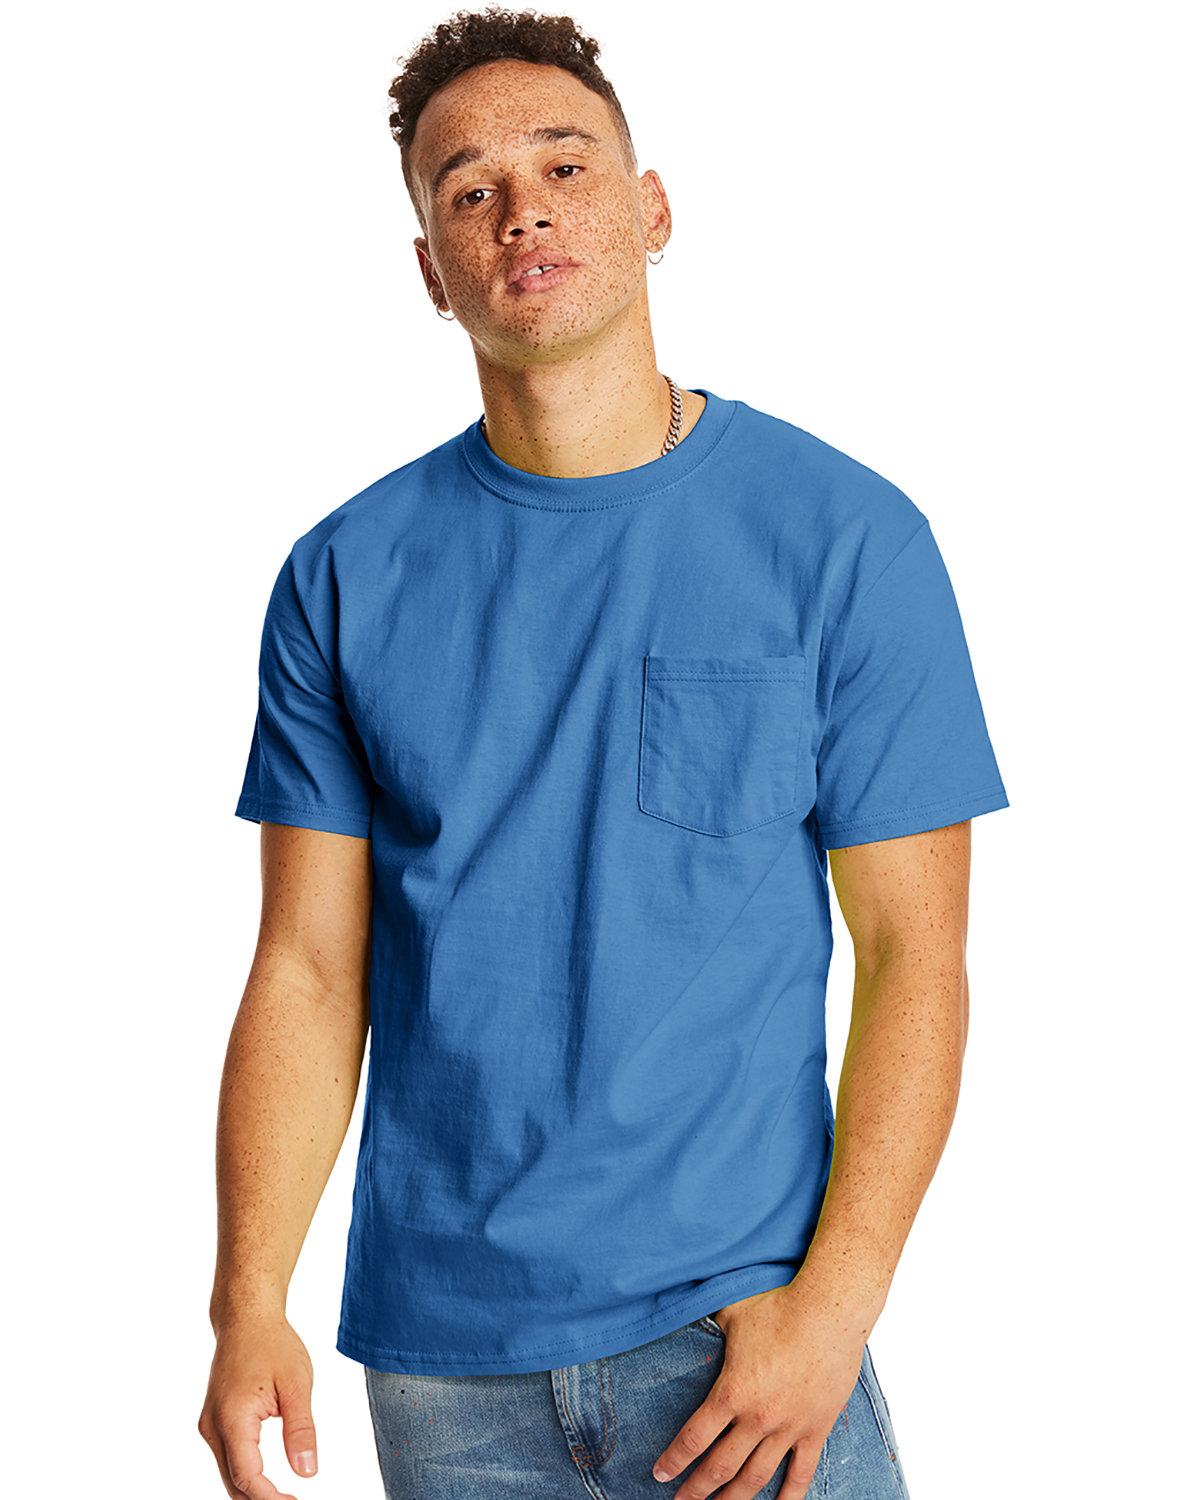 Hanes Men's Authentic-T Pocket T-Shirt denim blue 